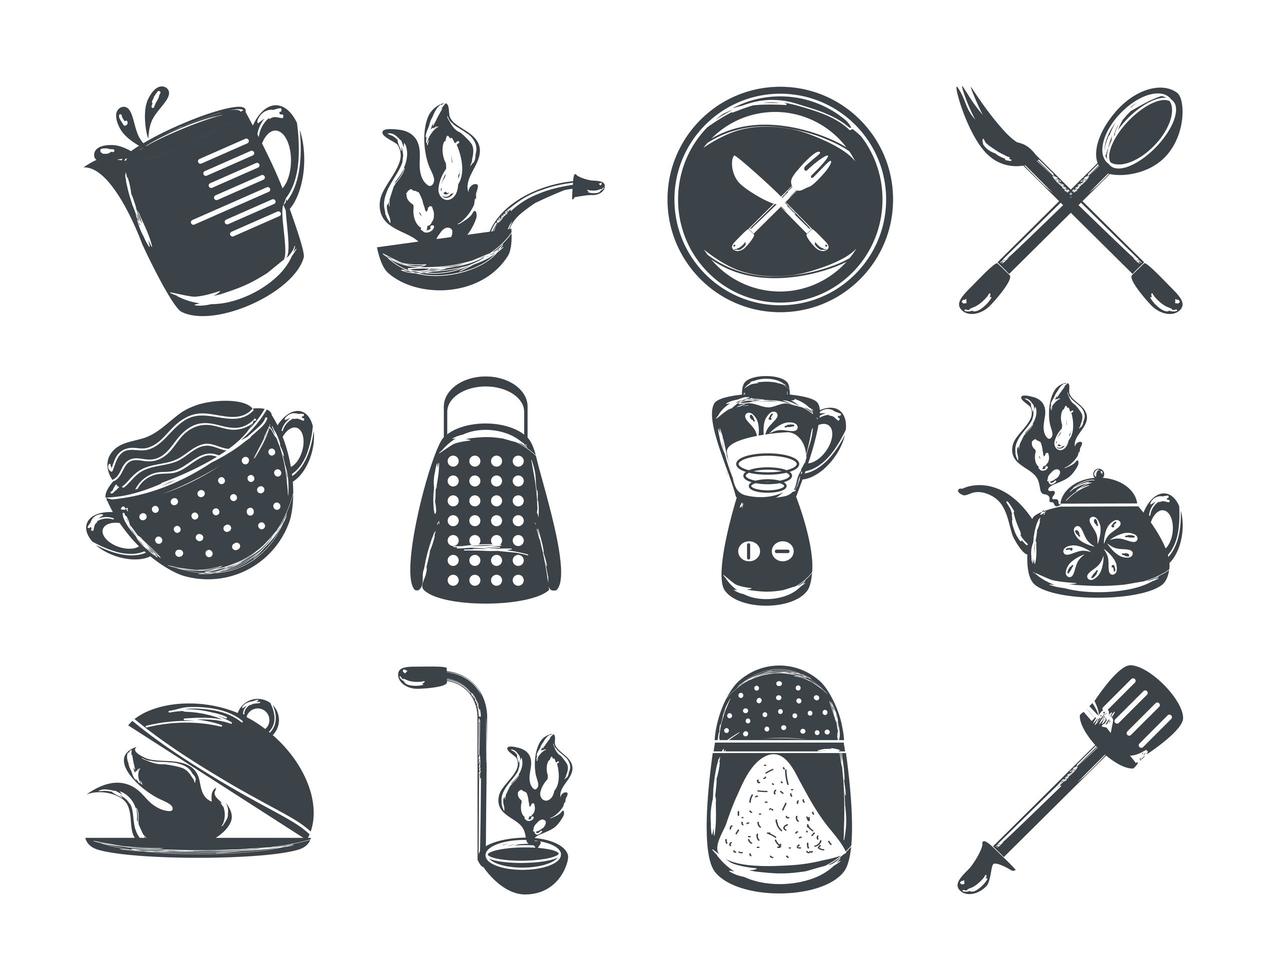 El juego de cubiertos y utensilios de cocina incluye una espátula, una licuadora, un tenedor y una cuchara. vector